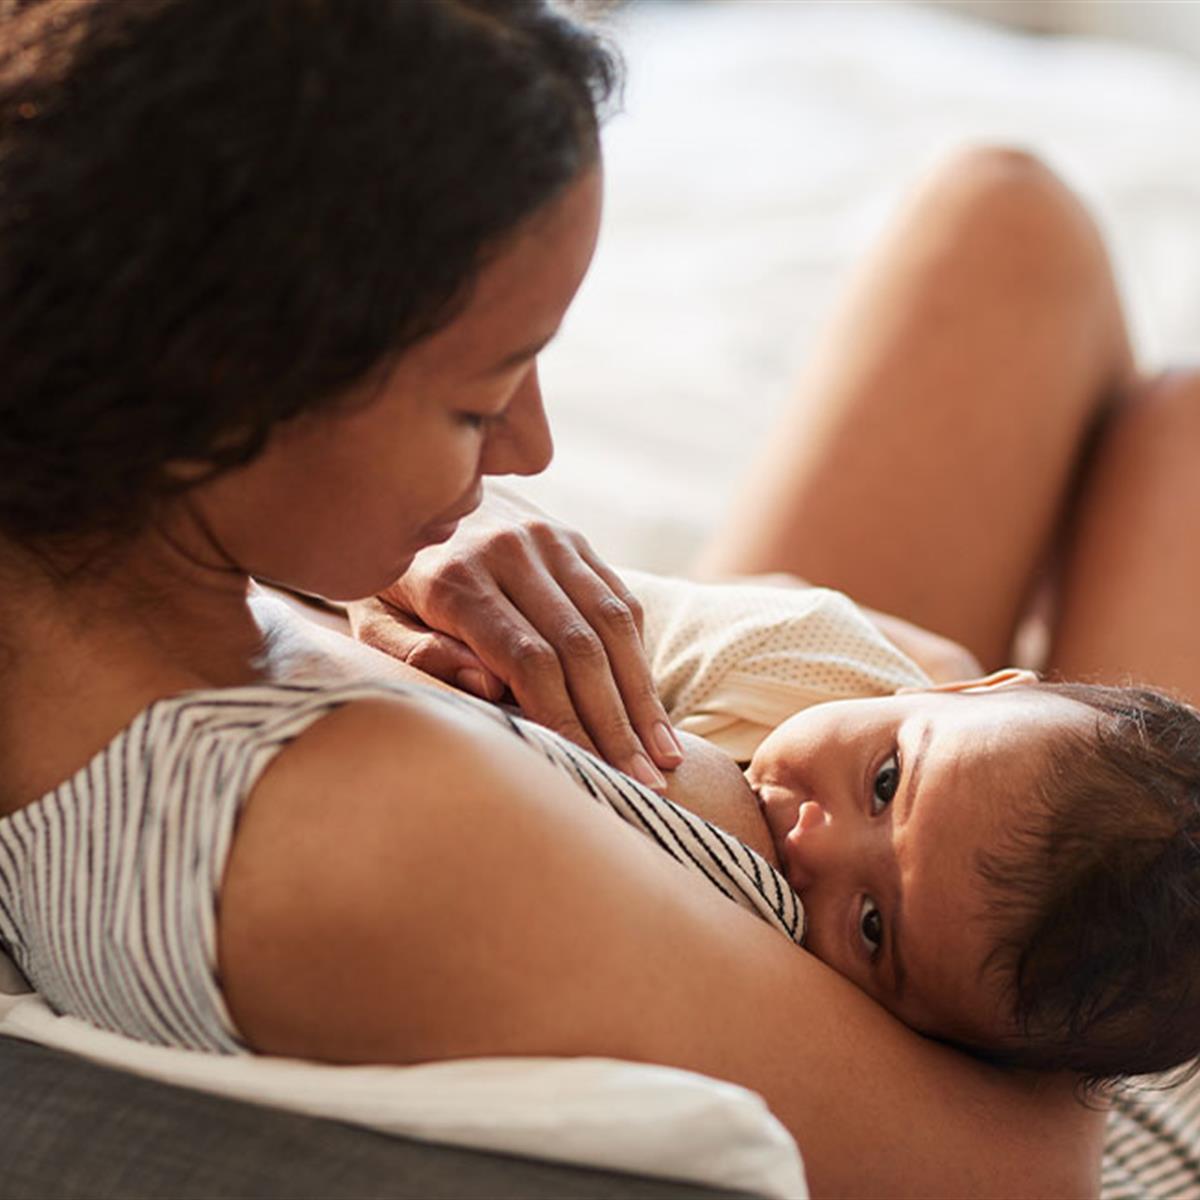 https://www.healthychildren.org/SiteCollectionImagesArticleImages/young-mother-breastfeeding.jpg?RenditionID=6